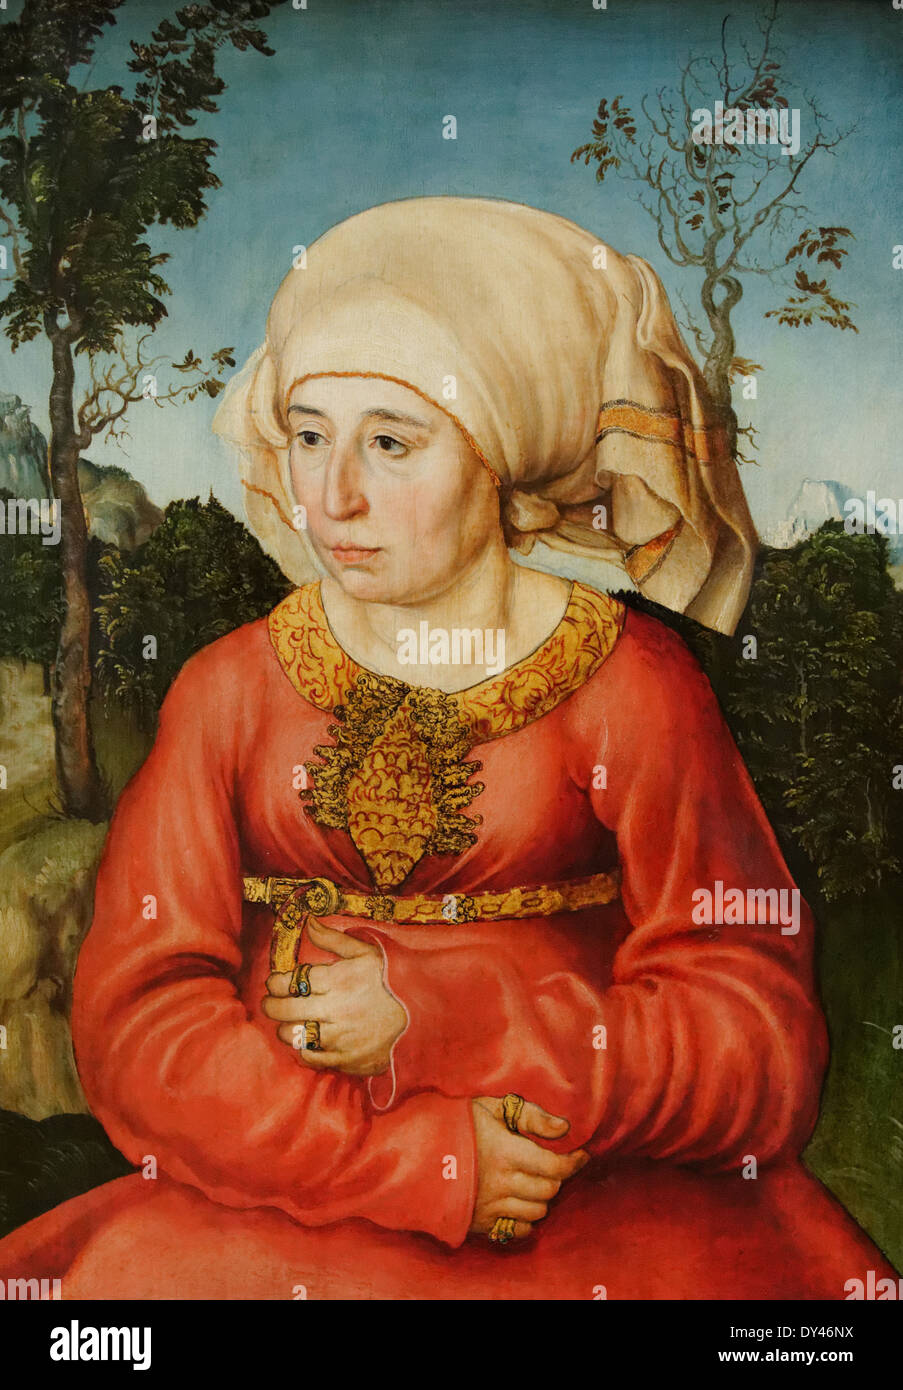 Lucas Cranach - Retrato de una abogada - 1503 - Siglo XVI - Colegio Alemán - Gemäldegalerie - Berlín Foto de stock